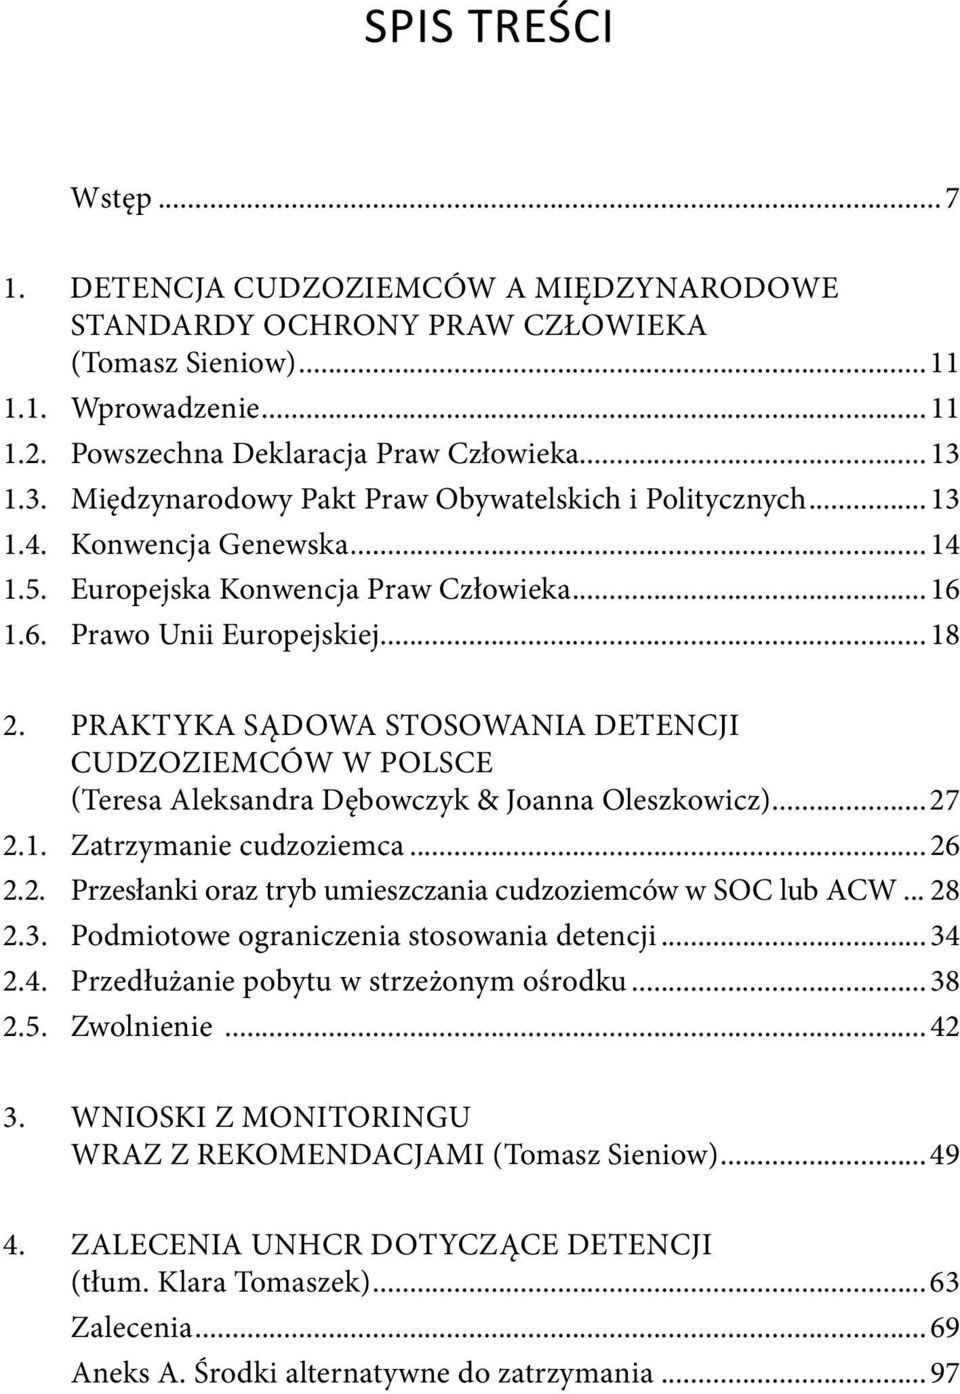 praktyka sądowa stosowania detencji cudzoziemców w Polsce (Teresa Aleksandra Dębowczyk & Joanna Oleszkowicz)...27 2.1. Zatrzymanie cudzoziemca...26 2.2. przesłanki oraz tryb umieszczania cudzoziemców w soc lub acw.